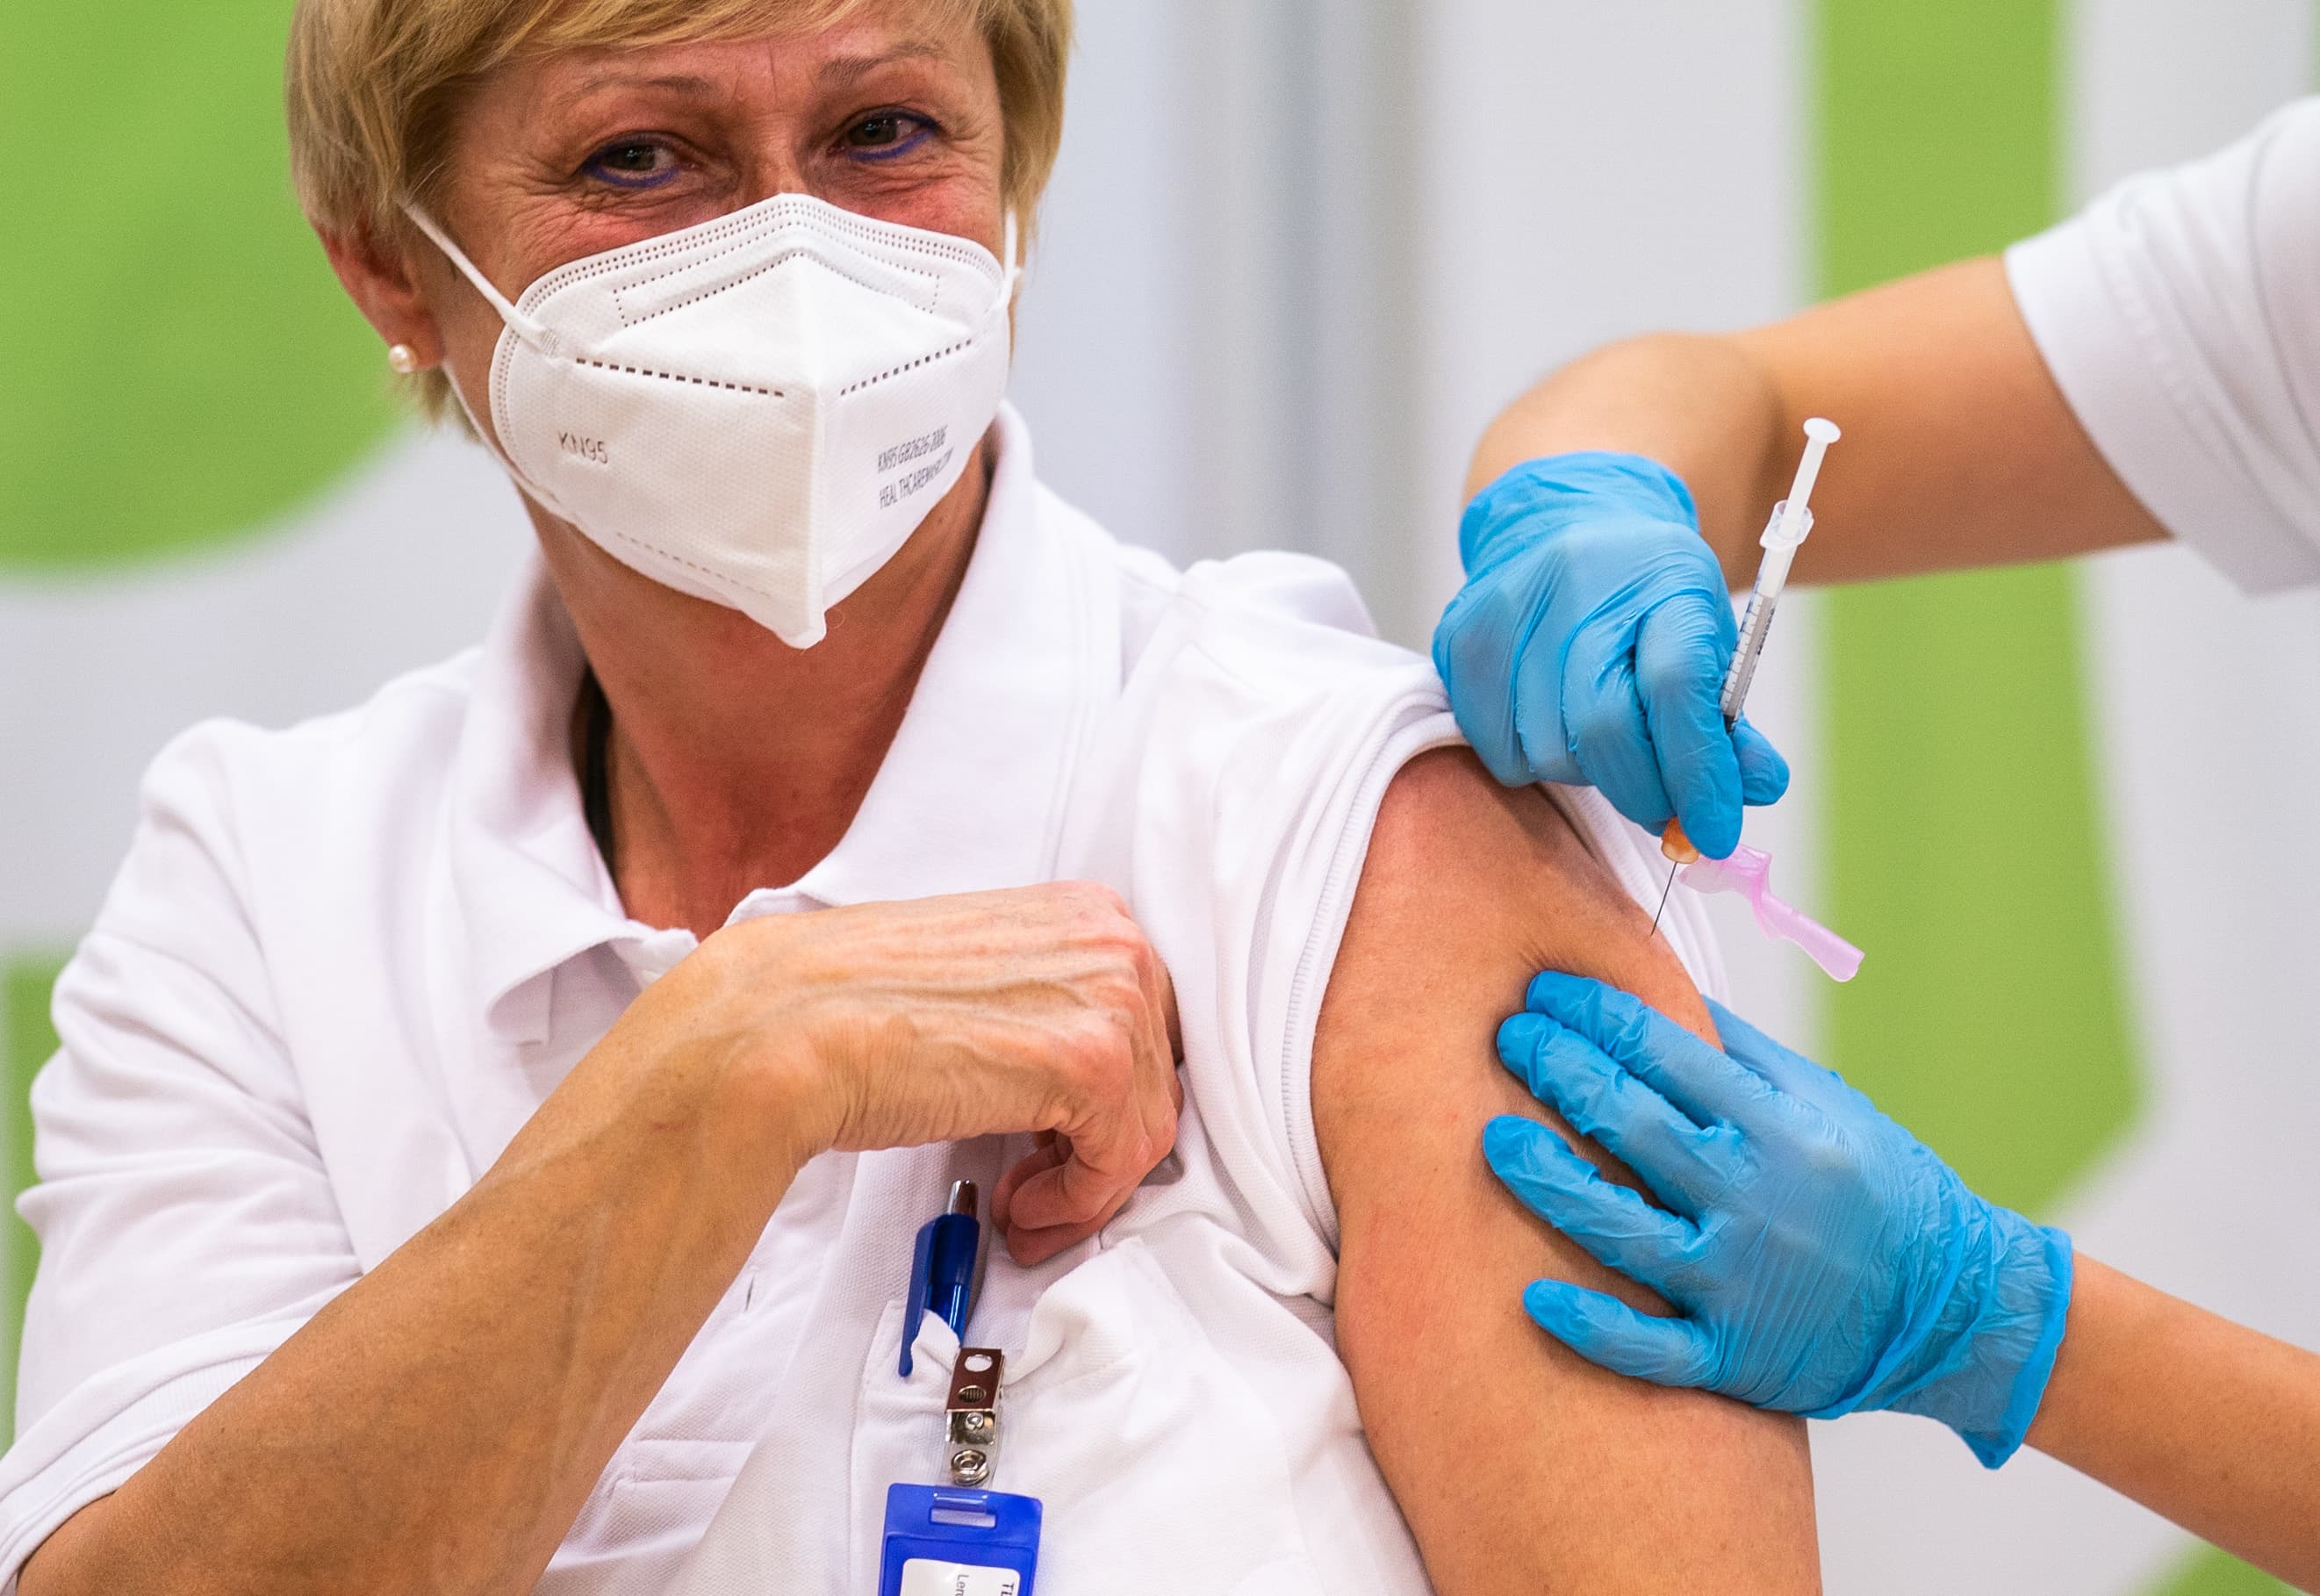 EU launches Covid-19 vaccine campaign